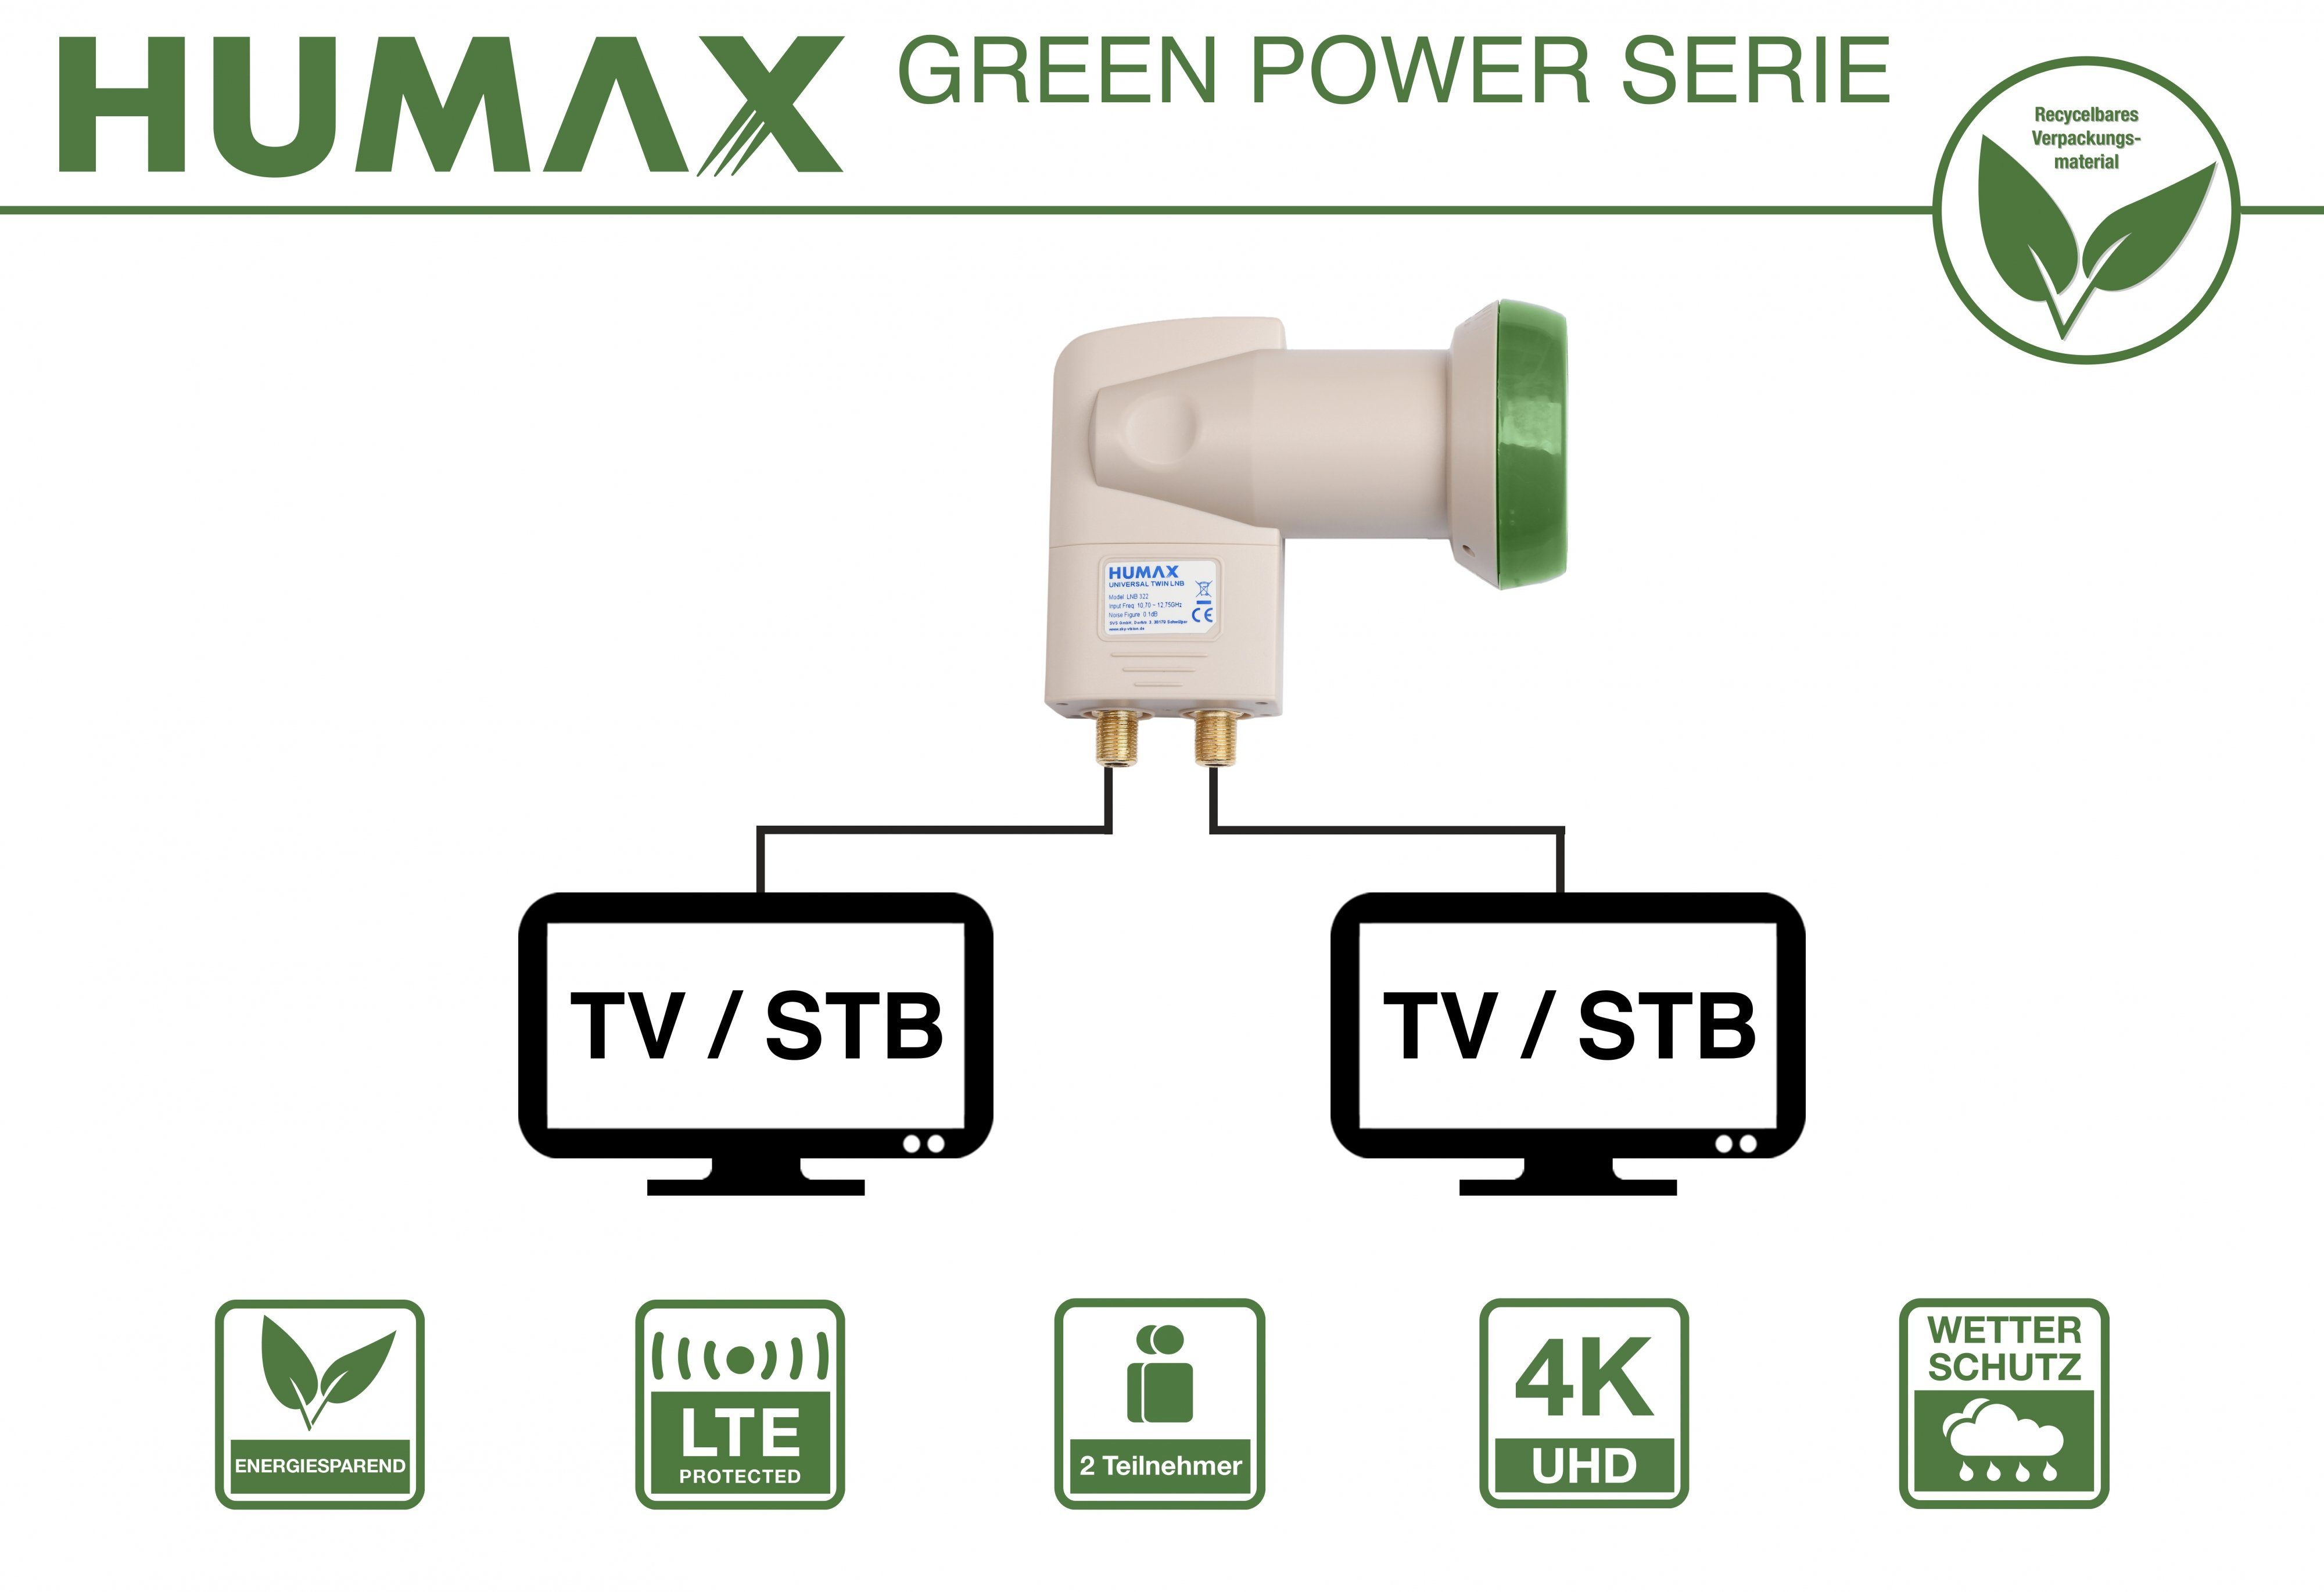 stromsparend LTE (für Verpackung, Umweltfreundliche 2 Universal-Twin-LNB Filter) Twin-LNB Teilnehmer, Green Humax 322, Power